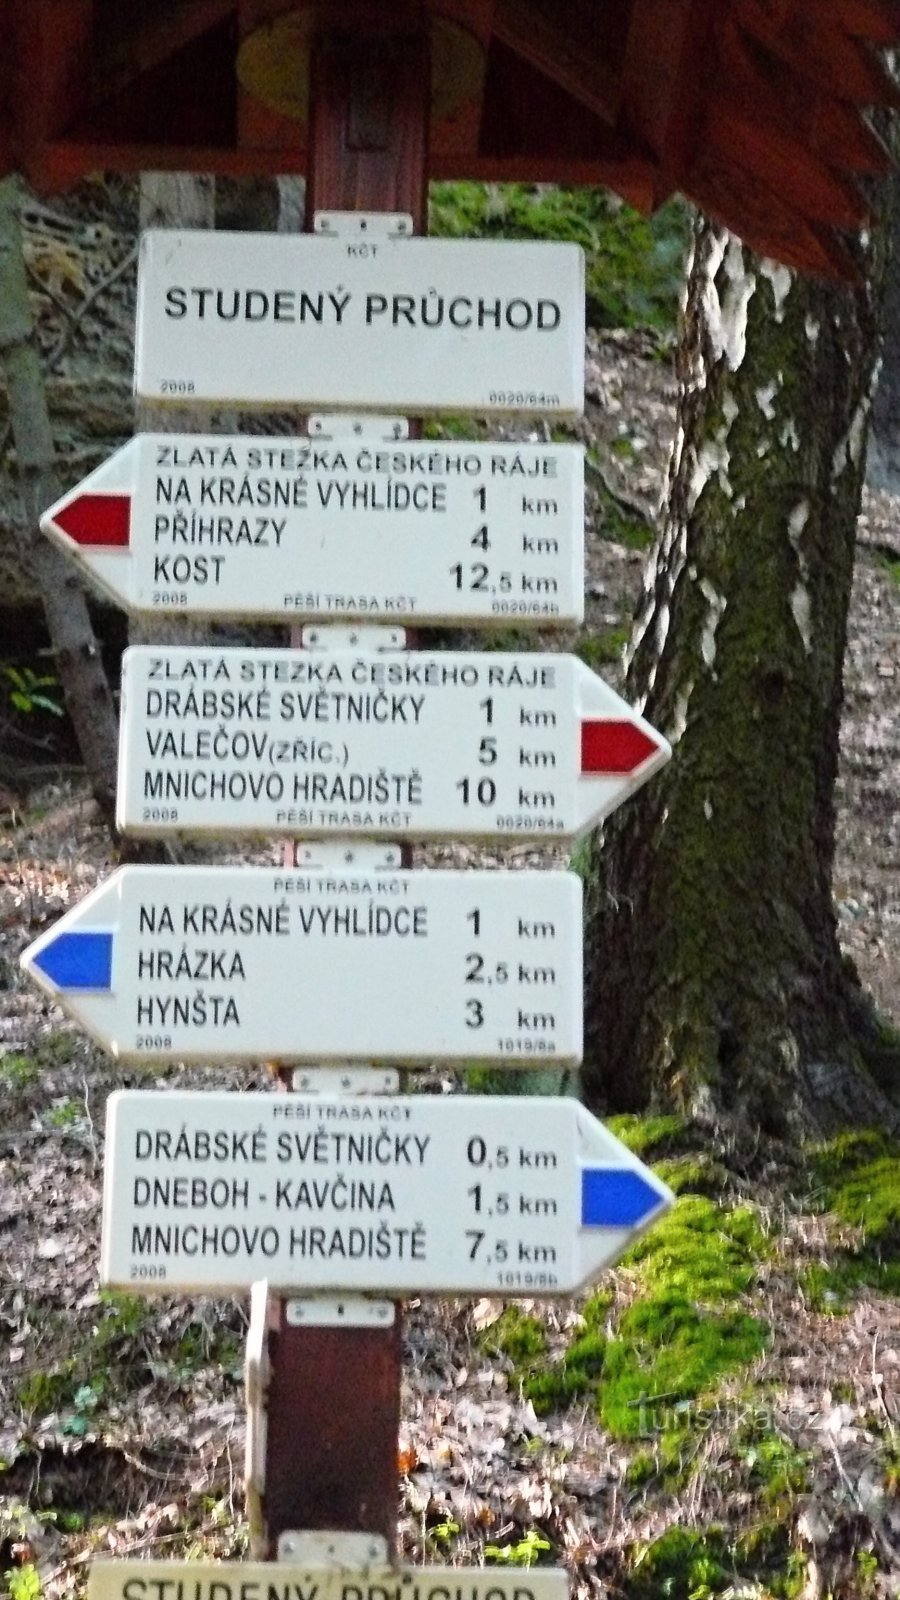 From Březina to Drábská světničky, Klamorna and Valečov to Mnichov Hradiště